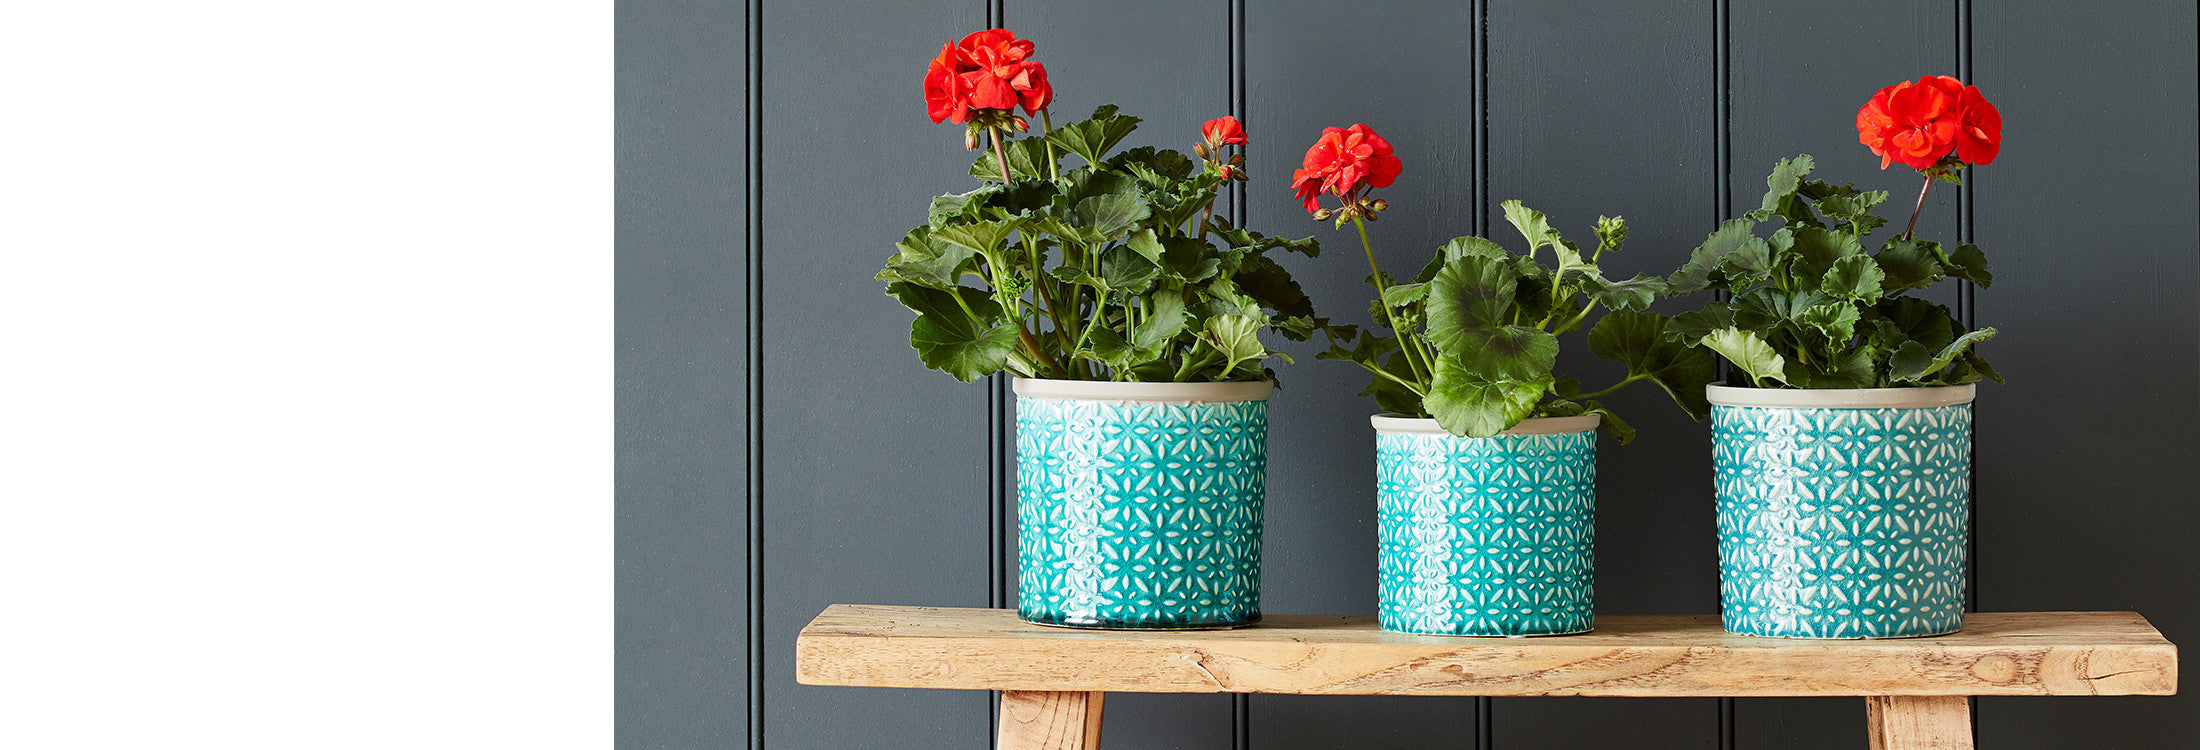 Indoor Plant Pots & Vases